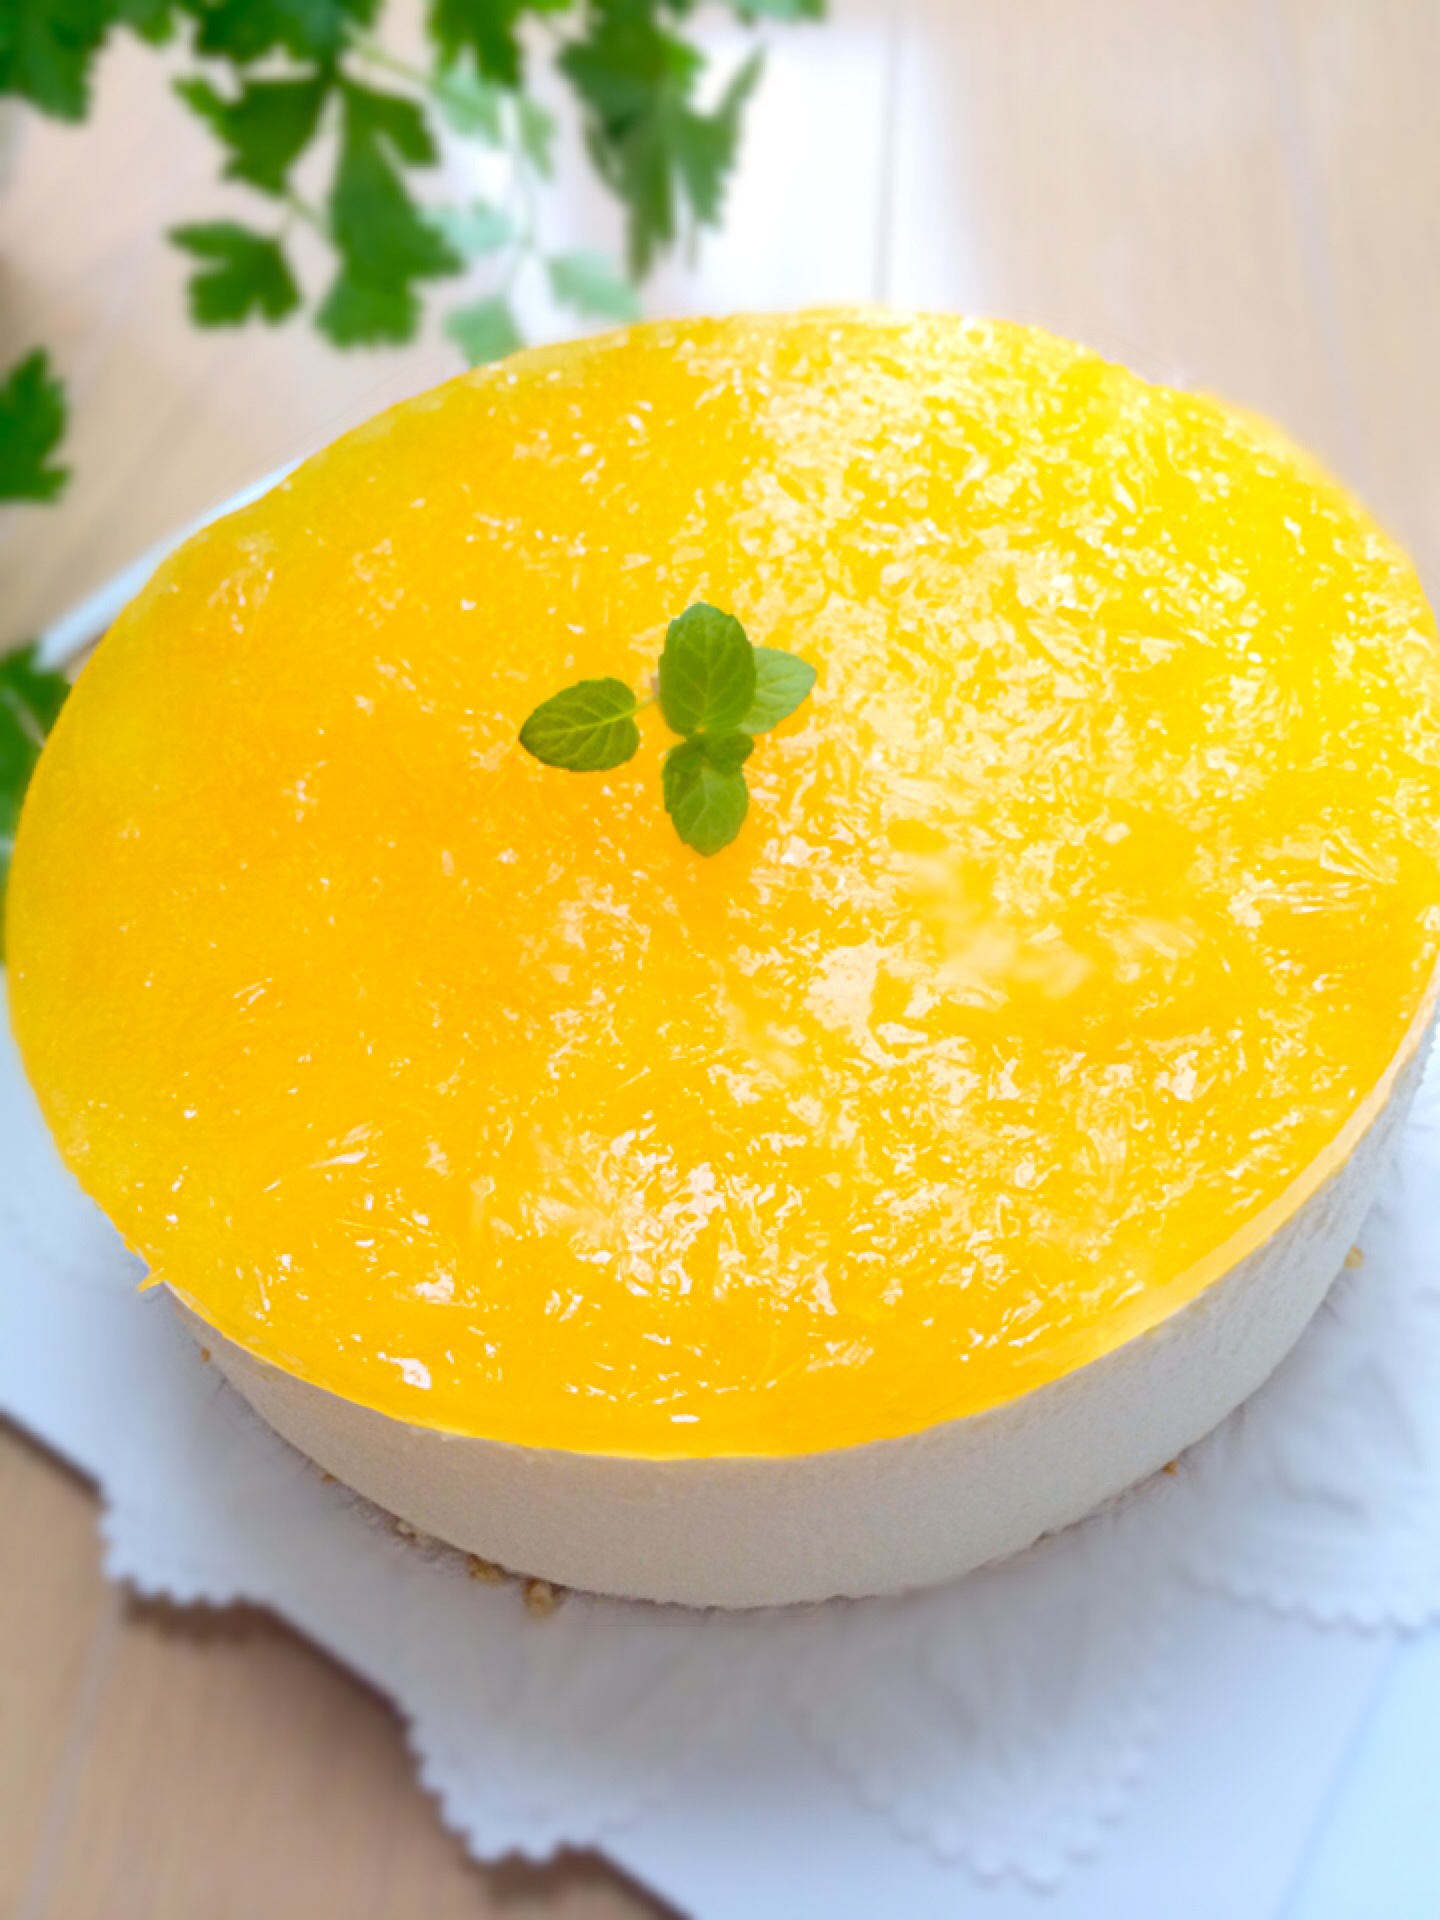 オレンジゼリーを乗せたレアチーズケーキ お花見弁当グランプリ14 ヤマサ醤油株式会社